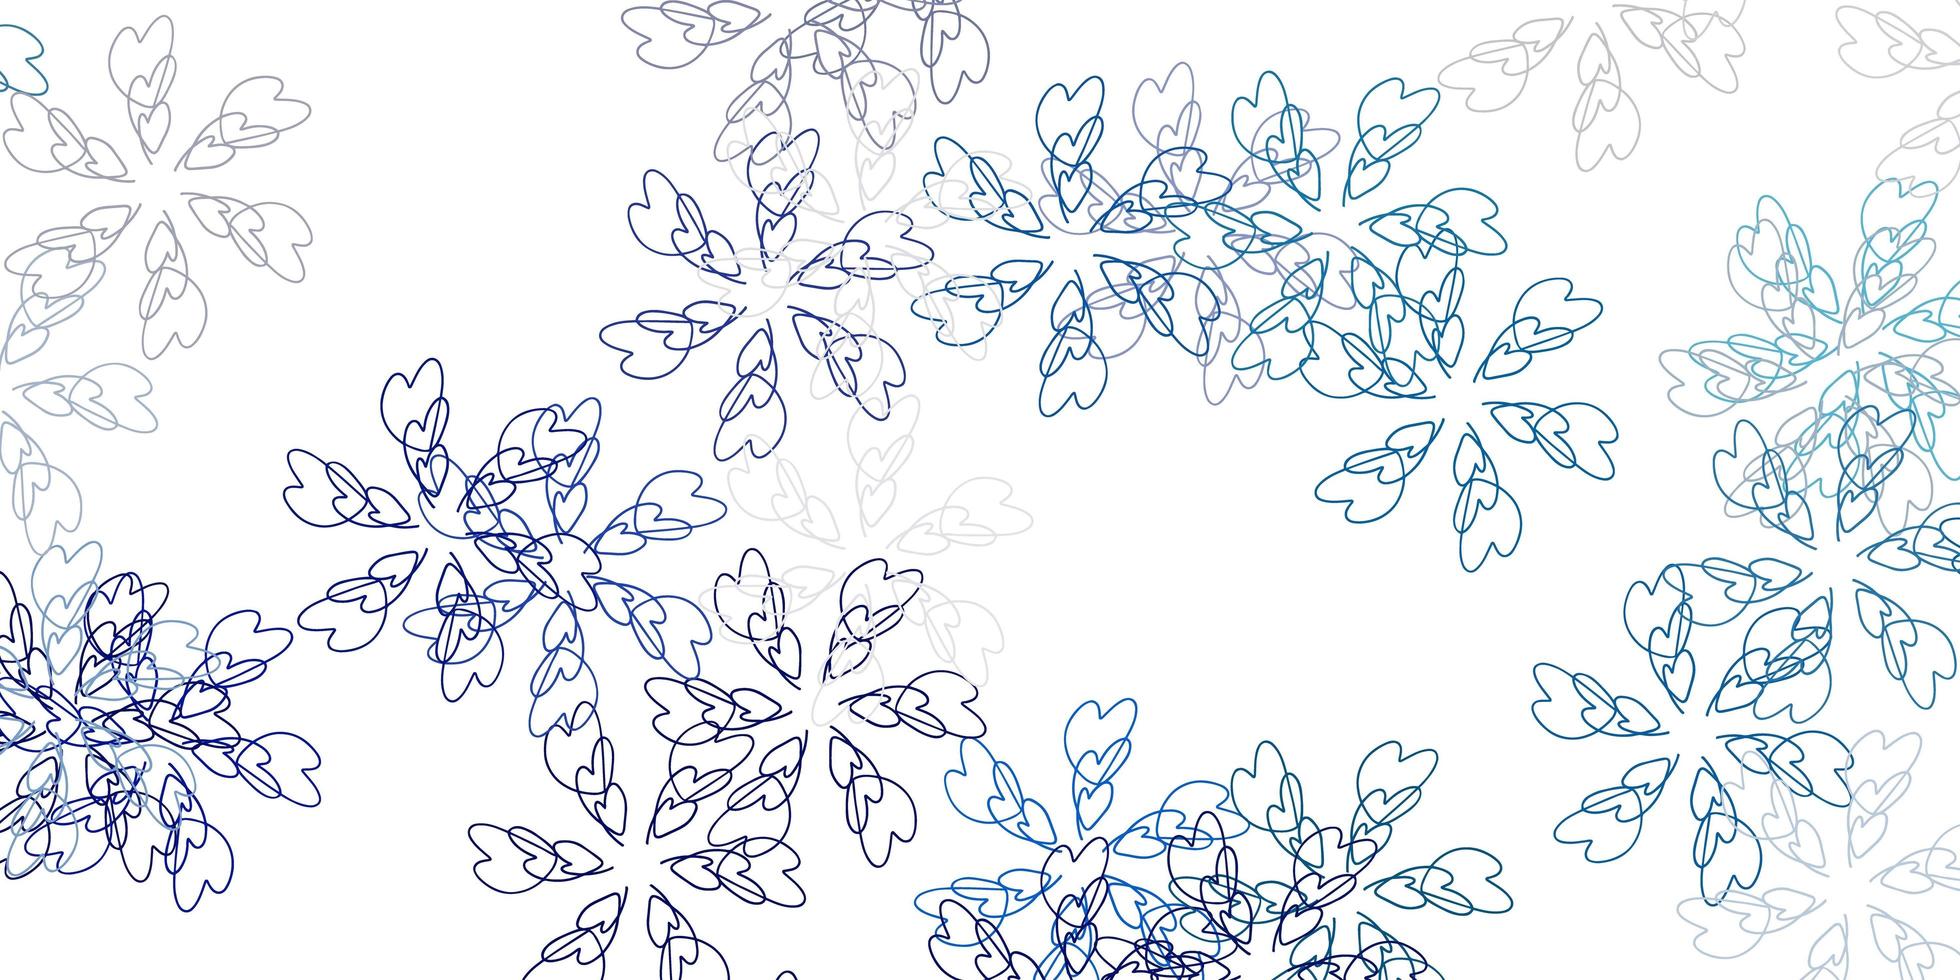 Telón de fondo abstracto de vector azul claro con hojas.